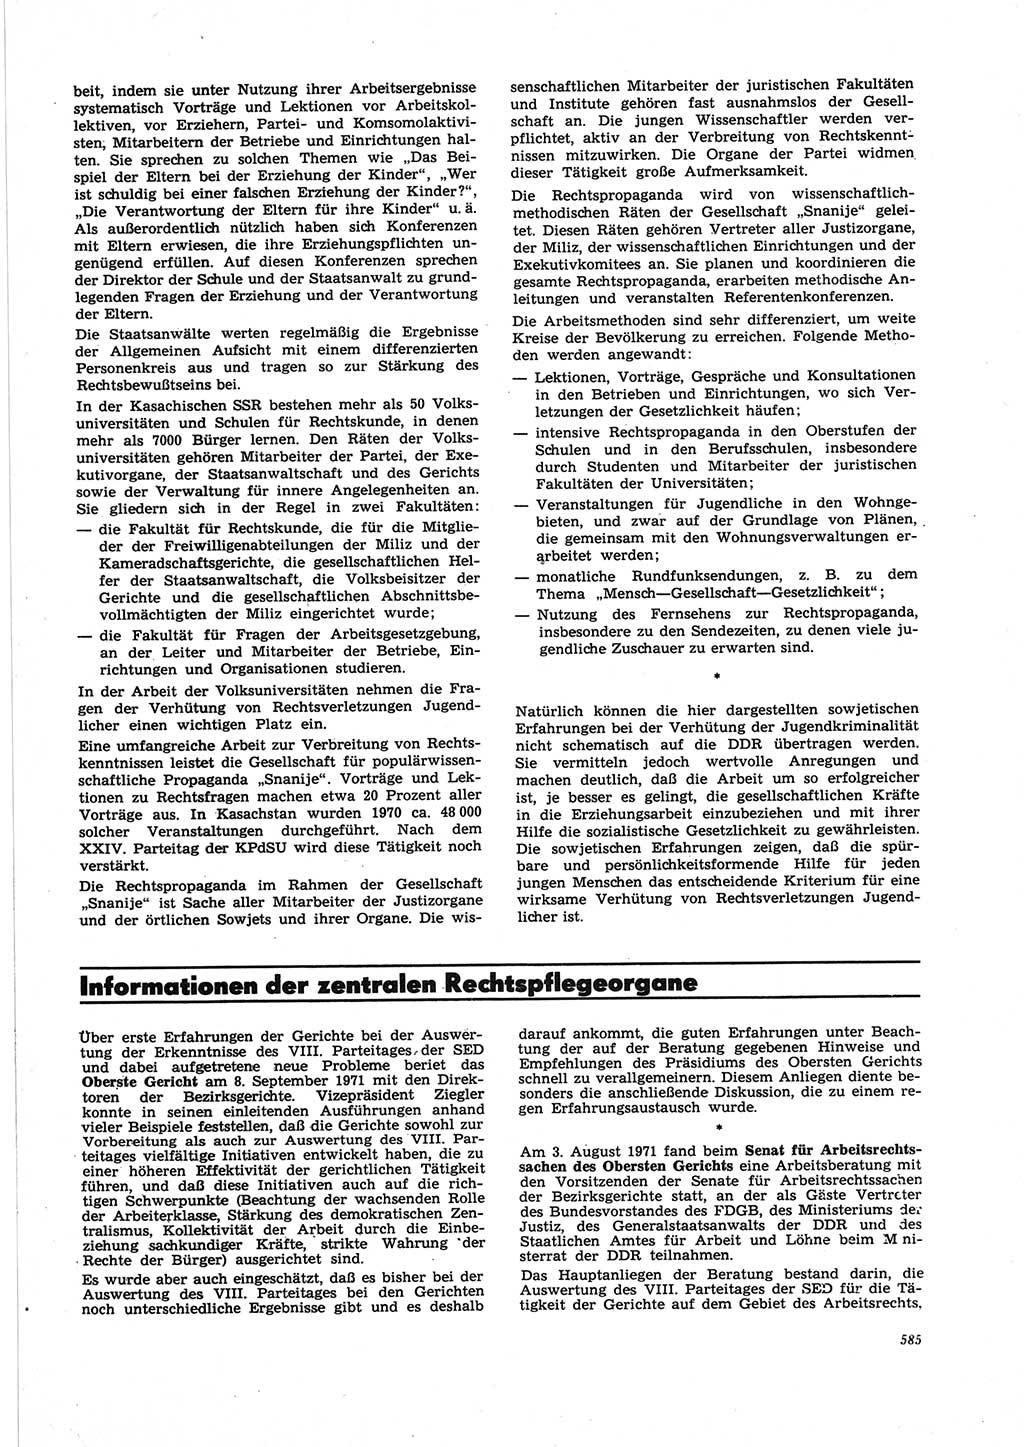 Neue Justiz (NJ), Zeitschrift für Recht und Rechtswissenschaft [Deutsche Demokratische Republik (DDR)], 25. Jahrgang 1971, Seite 585 (NJ DDR 1971, S. 585)